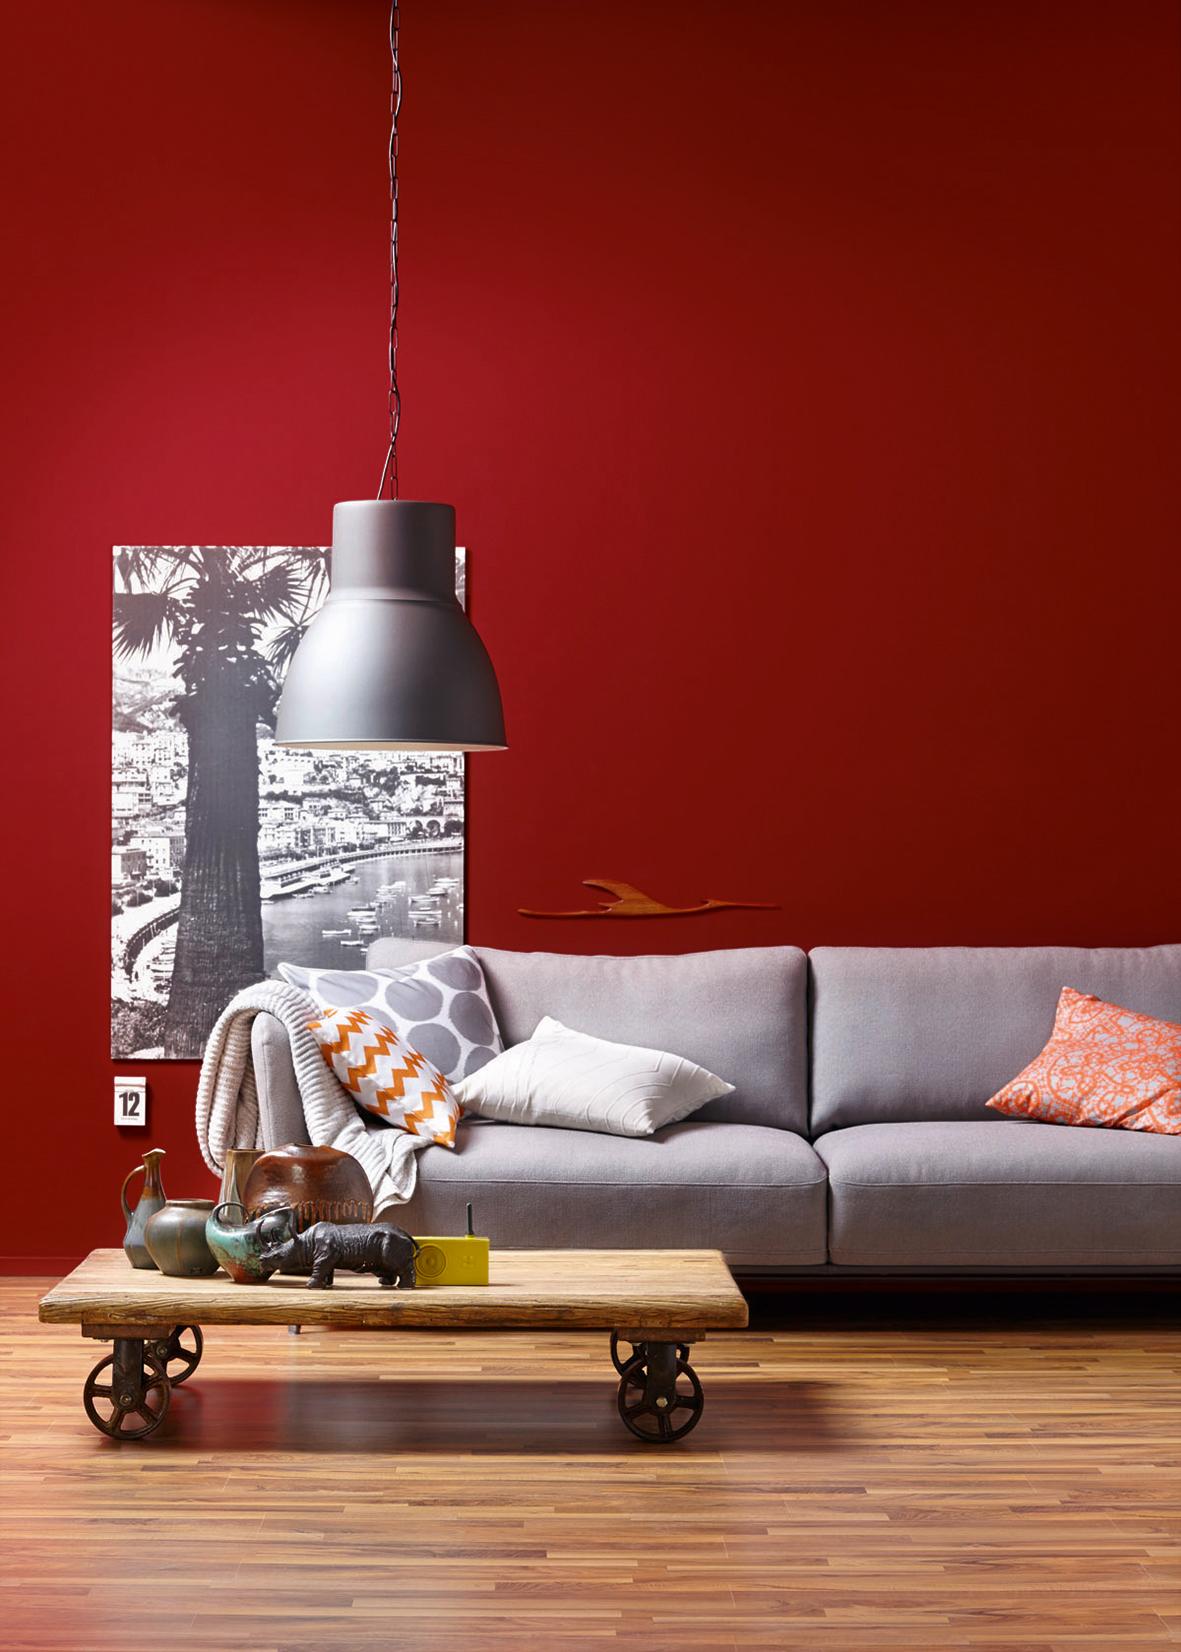 Amarena, SCHÖNER WOHNEN-Trendfarbe #wandfarbe #sofa #lampe #tisch #rotewandfarbe #schönerwohnenfarberot